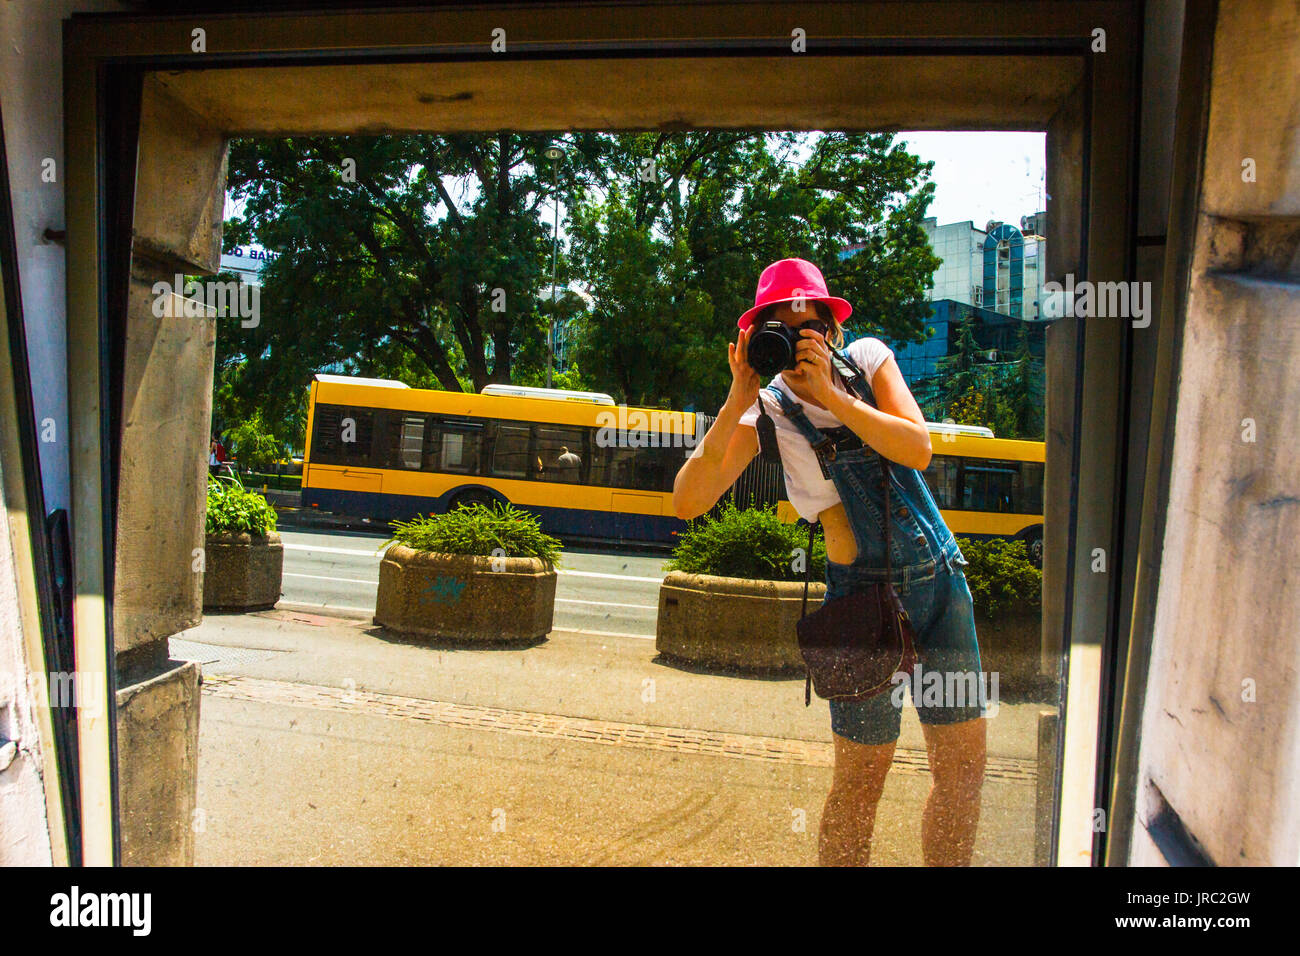 Hübsches Mädchen ein Bild mit einem Bus in einem Spiegel in Belgrad, Serbien Stockfoto